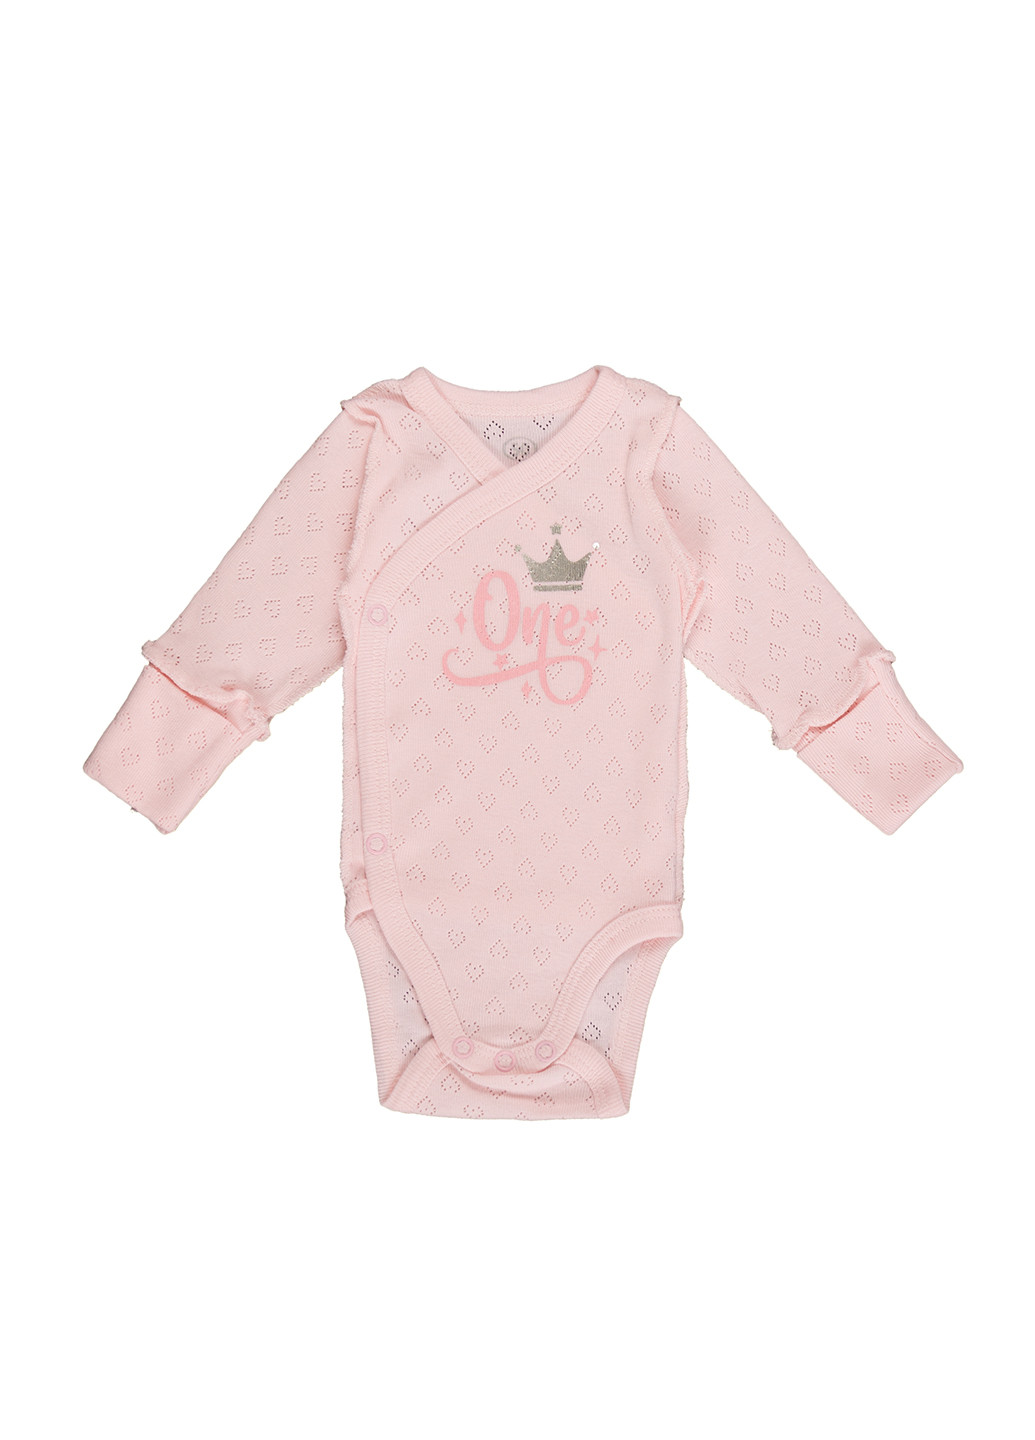 Боди для новорожденных длинный рукав Фламинго Текстиль рисунки розовые домашние хлопок